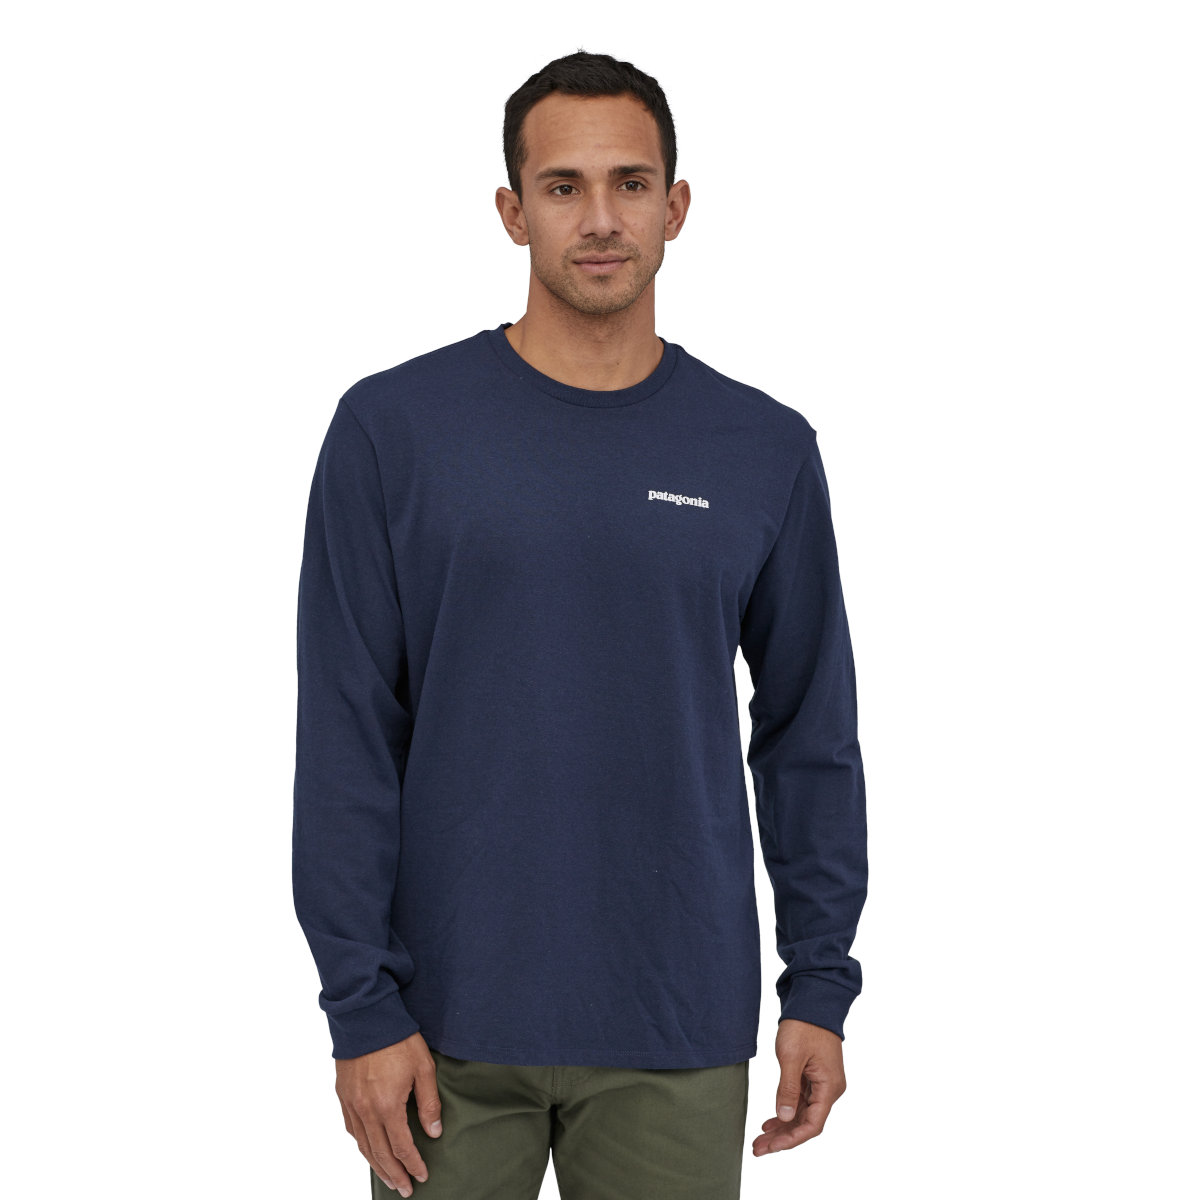 Productfoto van Patagonia P-6 Logo Responsibili-Tee Heren Shirt met Lange Mouwen - Classic Navy